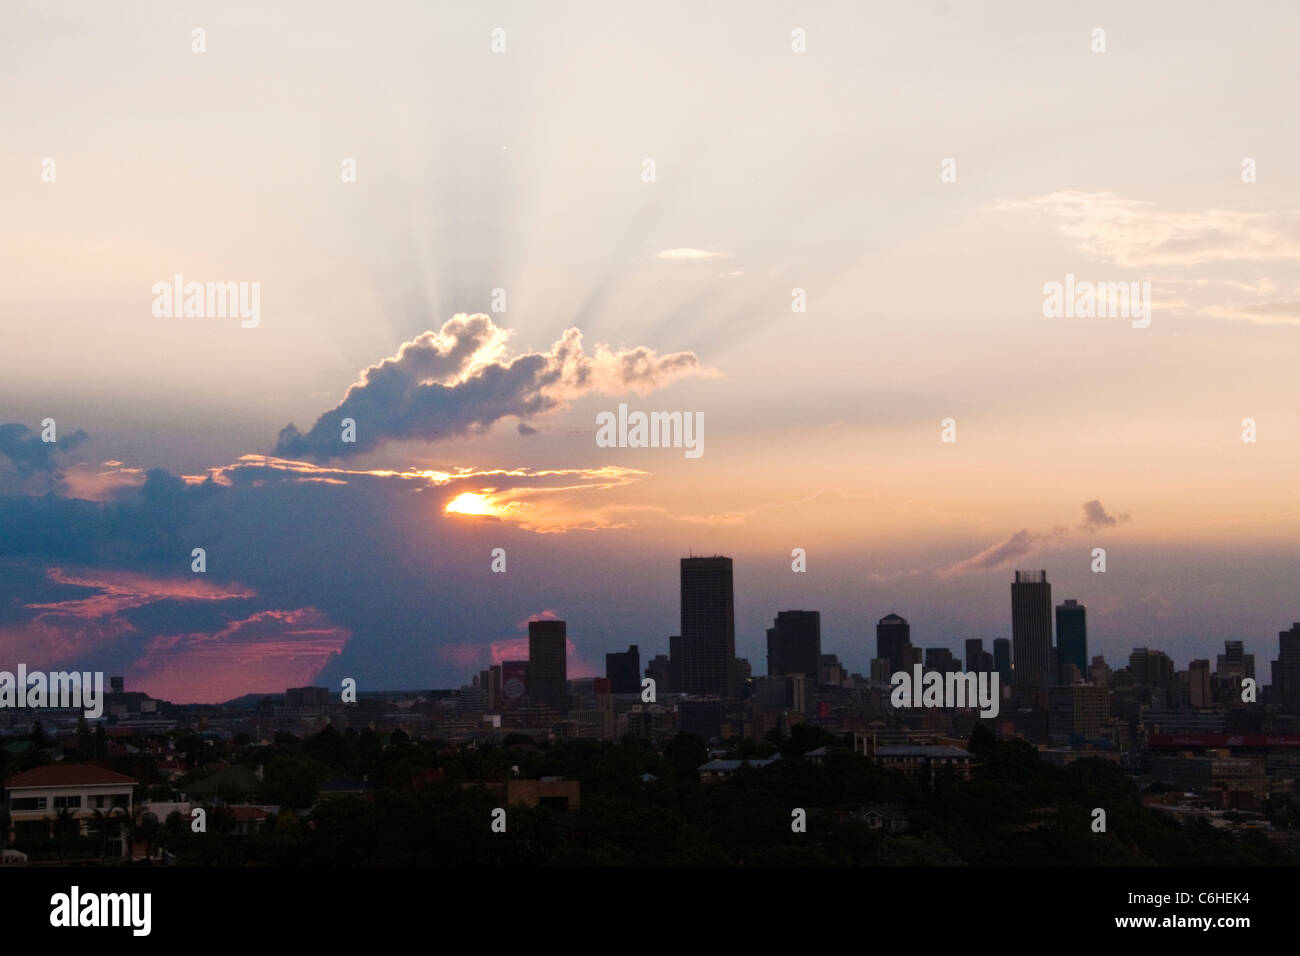 El horizonte de la ciudad de Johannesburgo al atardecer Foto de stock